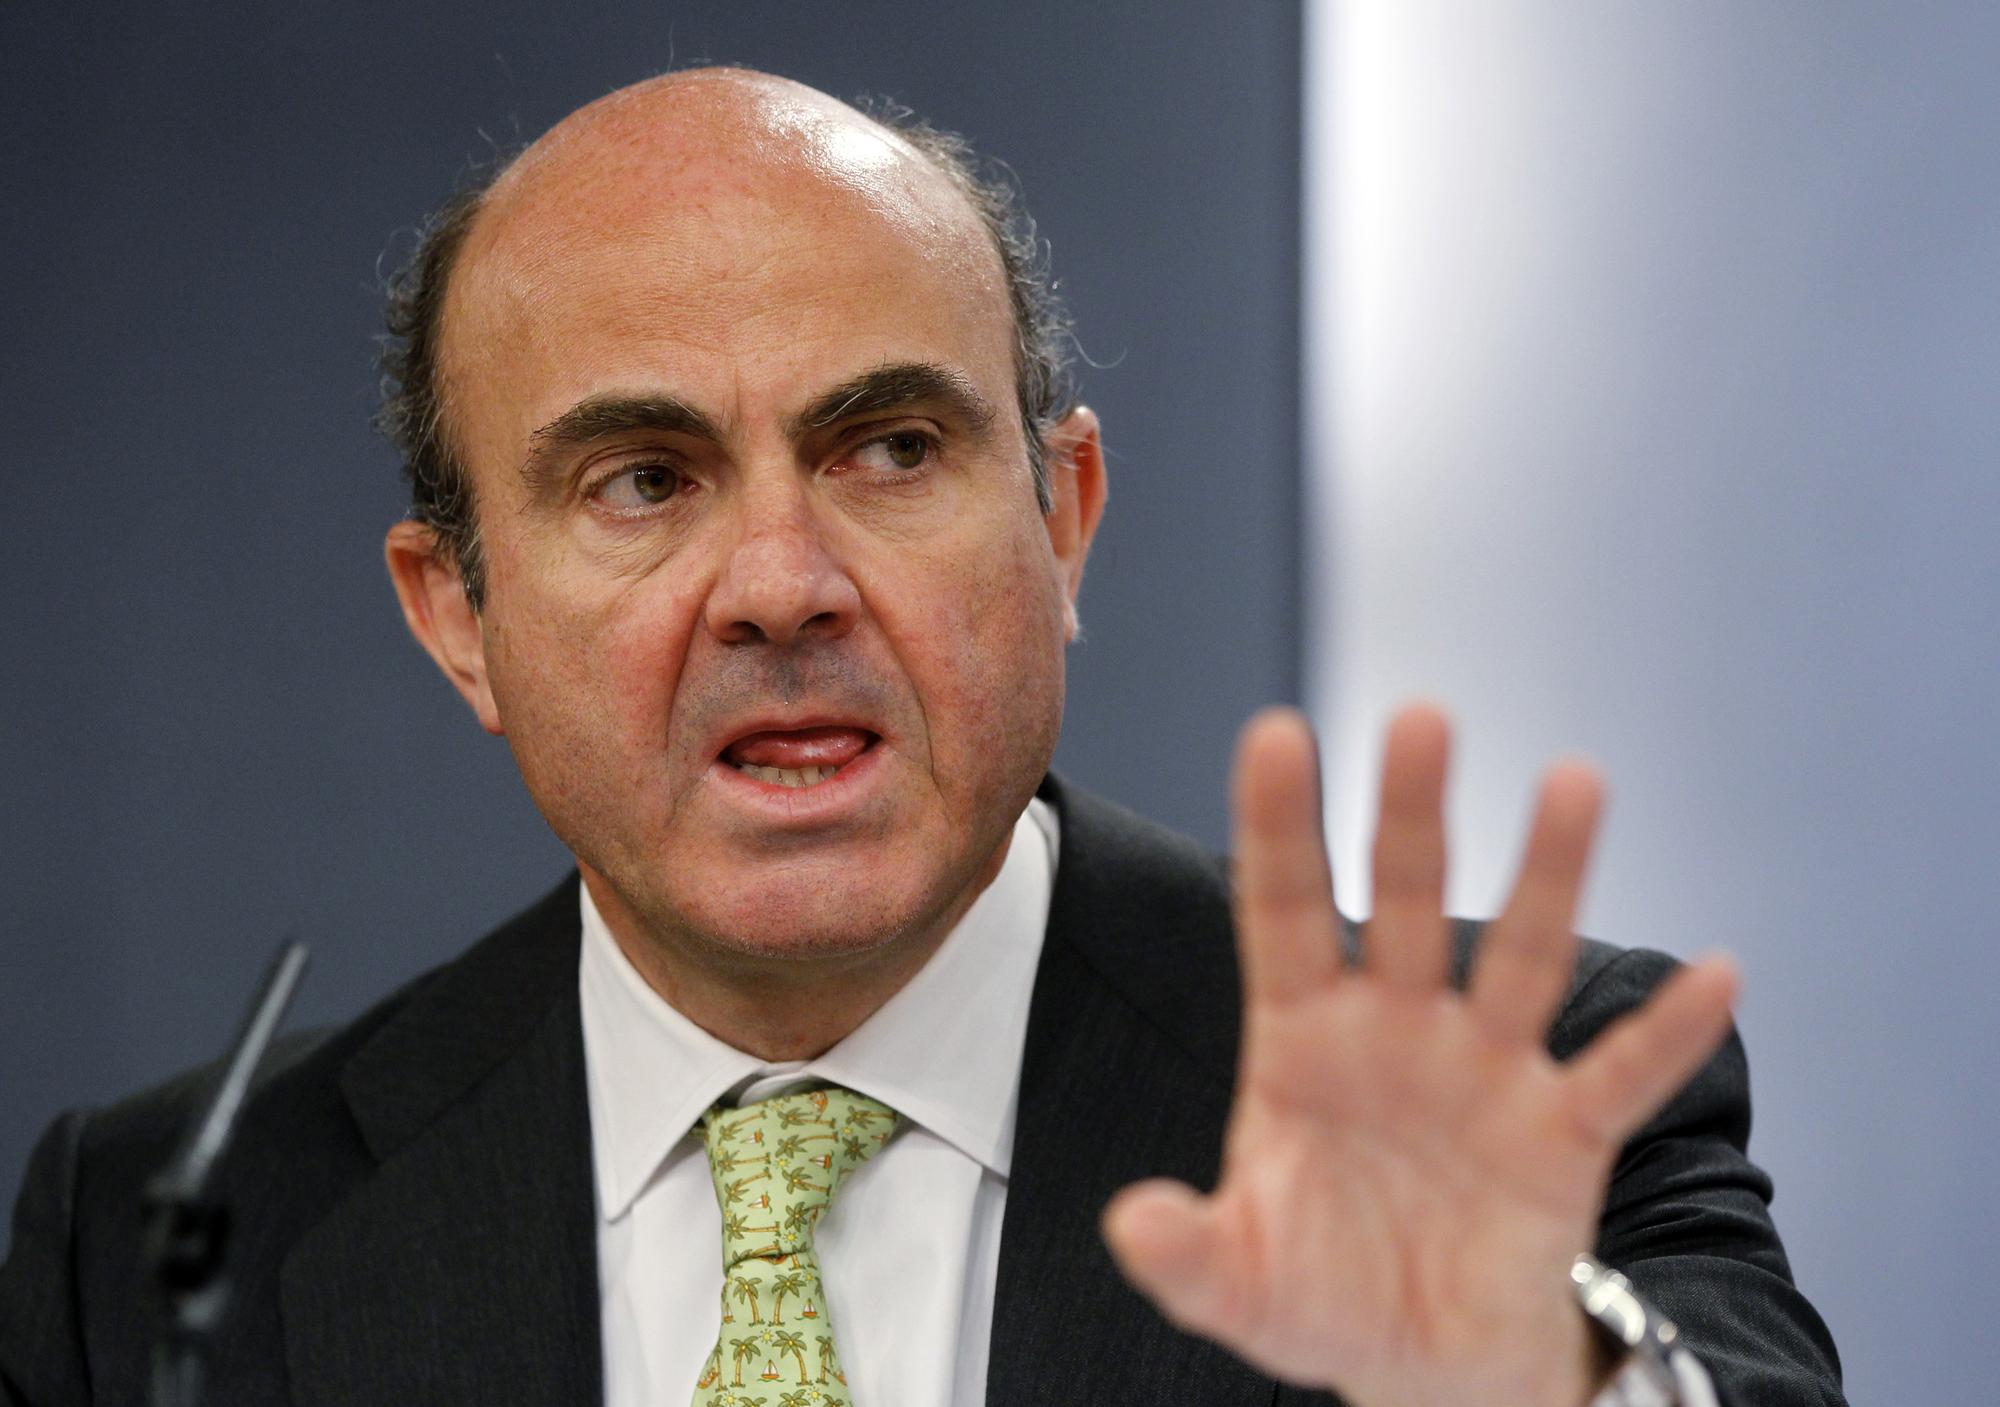 Le ministre espagnol de l'Economie, Luis de Guindos, veut attendre les résultats des audits avant de se prononcer sur un montant de l'aide européenne. [Reuters - Susana Vera]